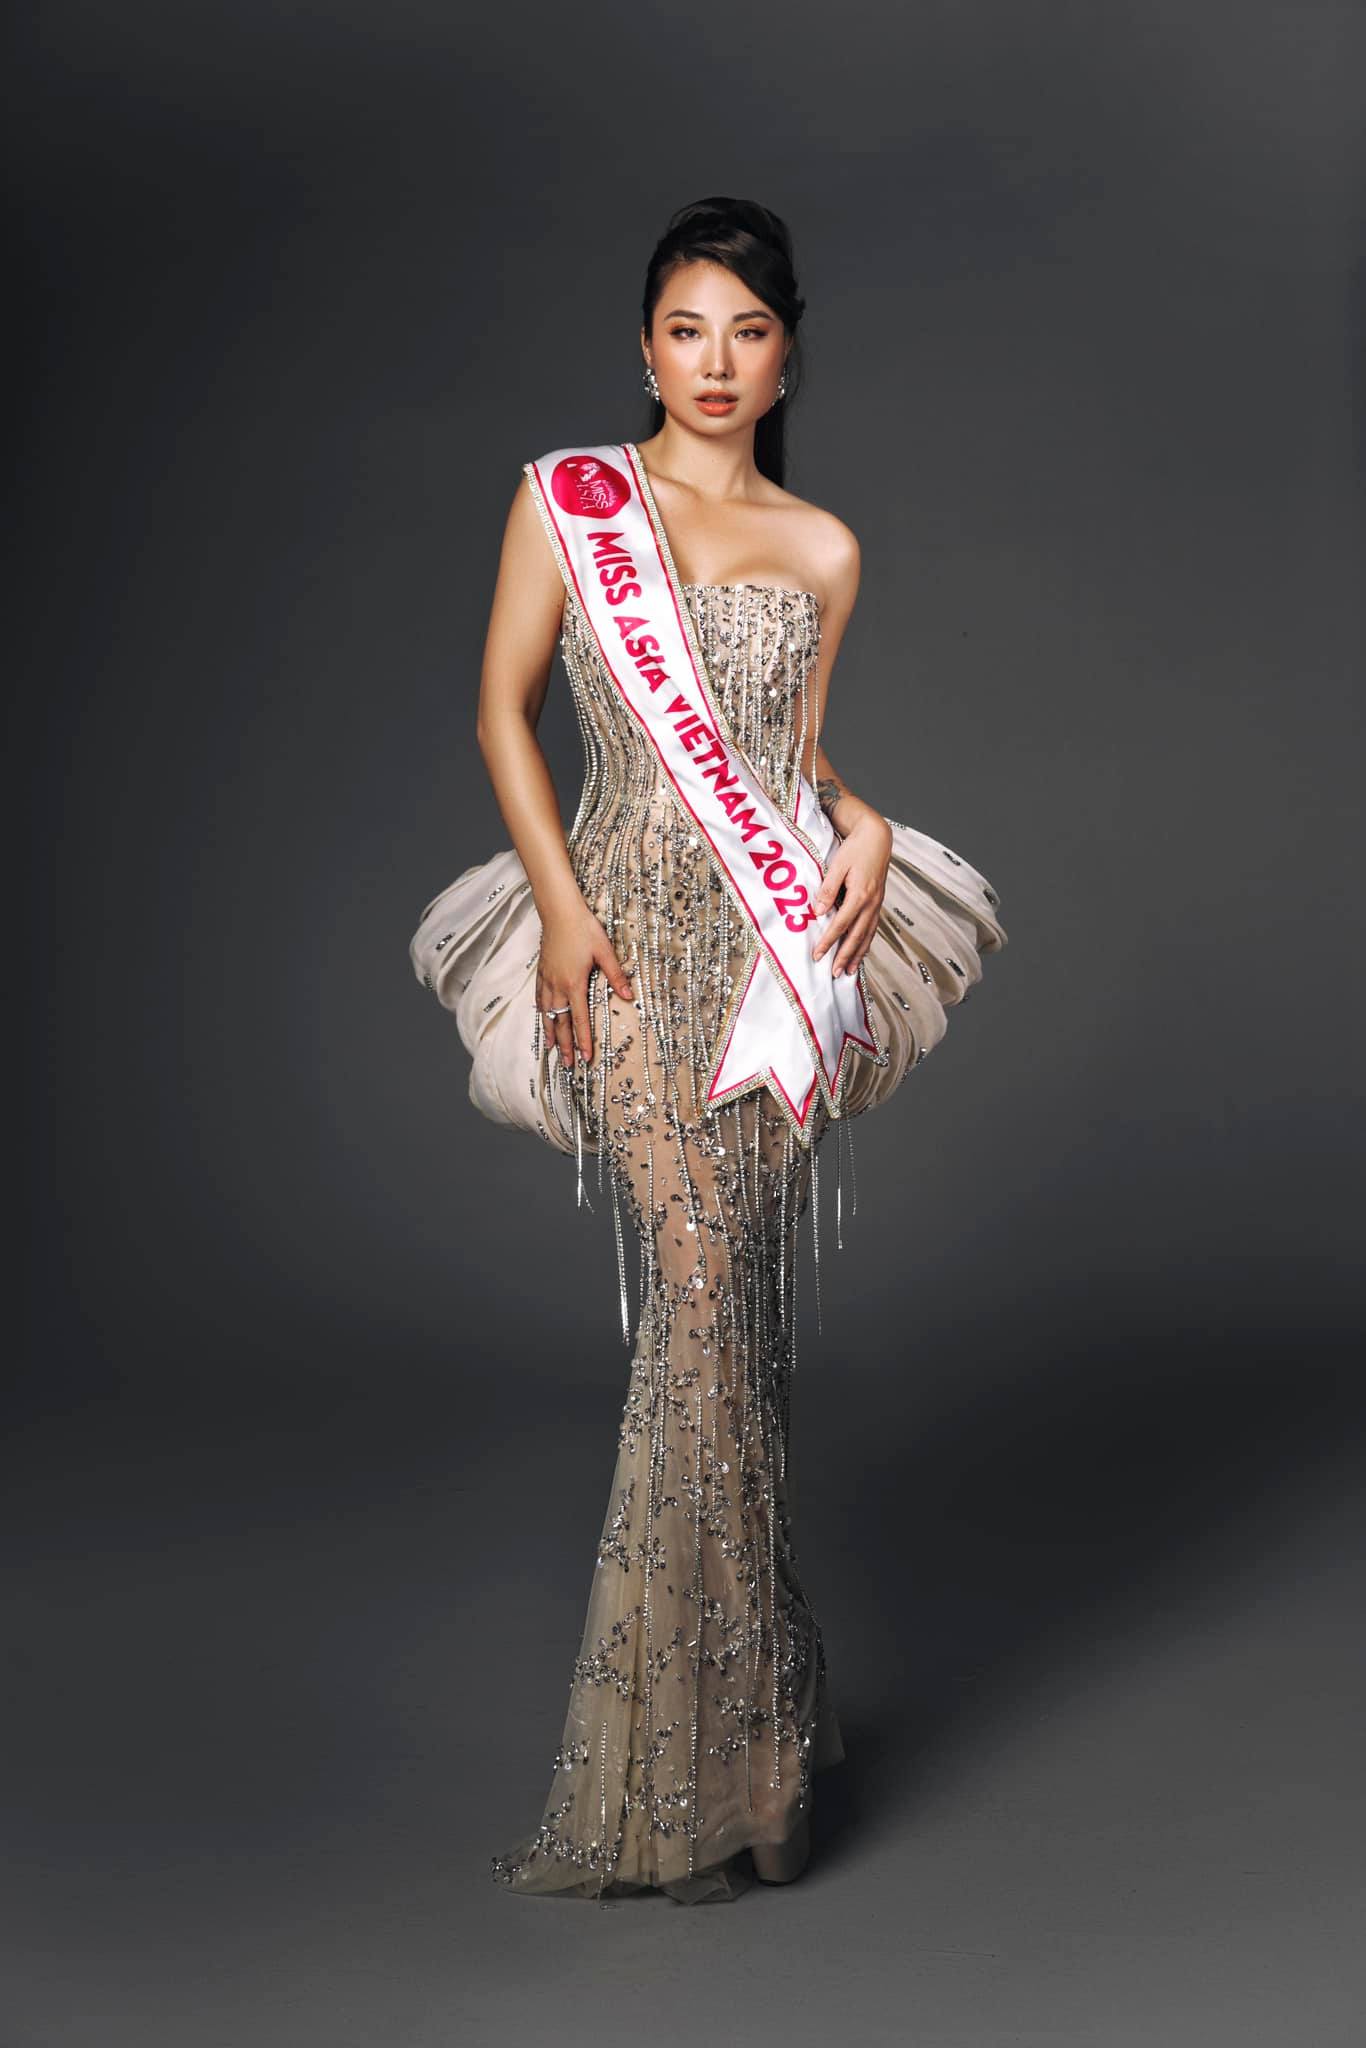 Vẻ nóng bỏng của cô gái Việt thi Hoa hậu châu Á - Ảnh 2.